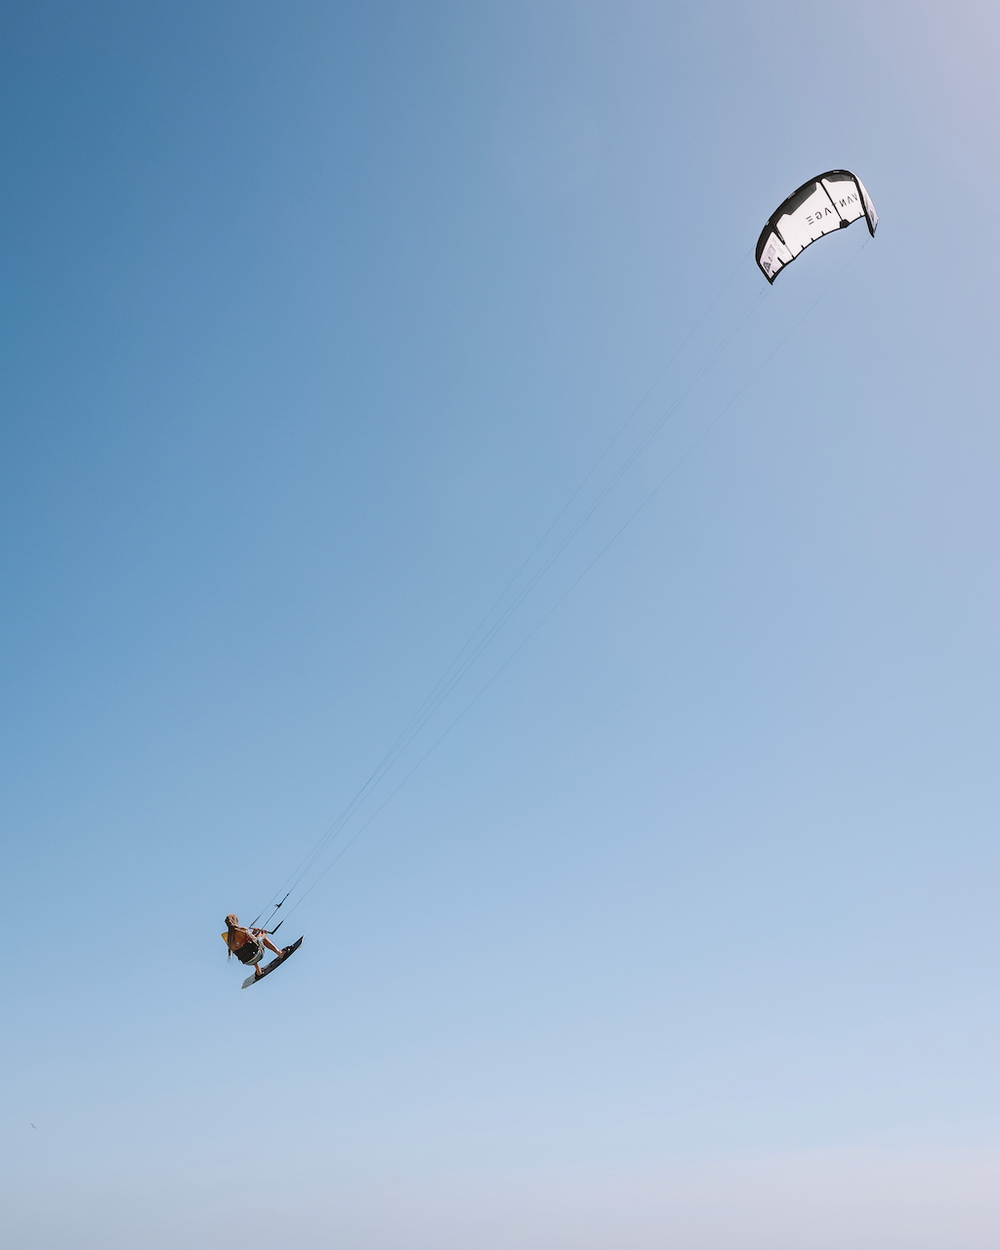 A kitesurfer jumping in the air at Hadicurari Beach - Aruba - ABC Islands